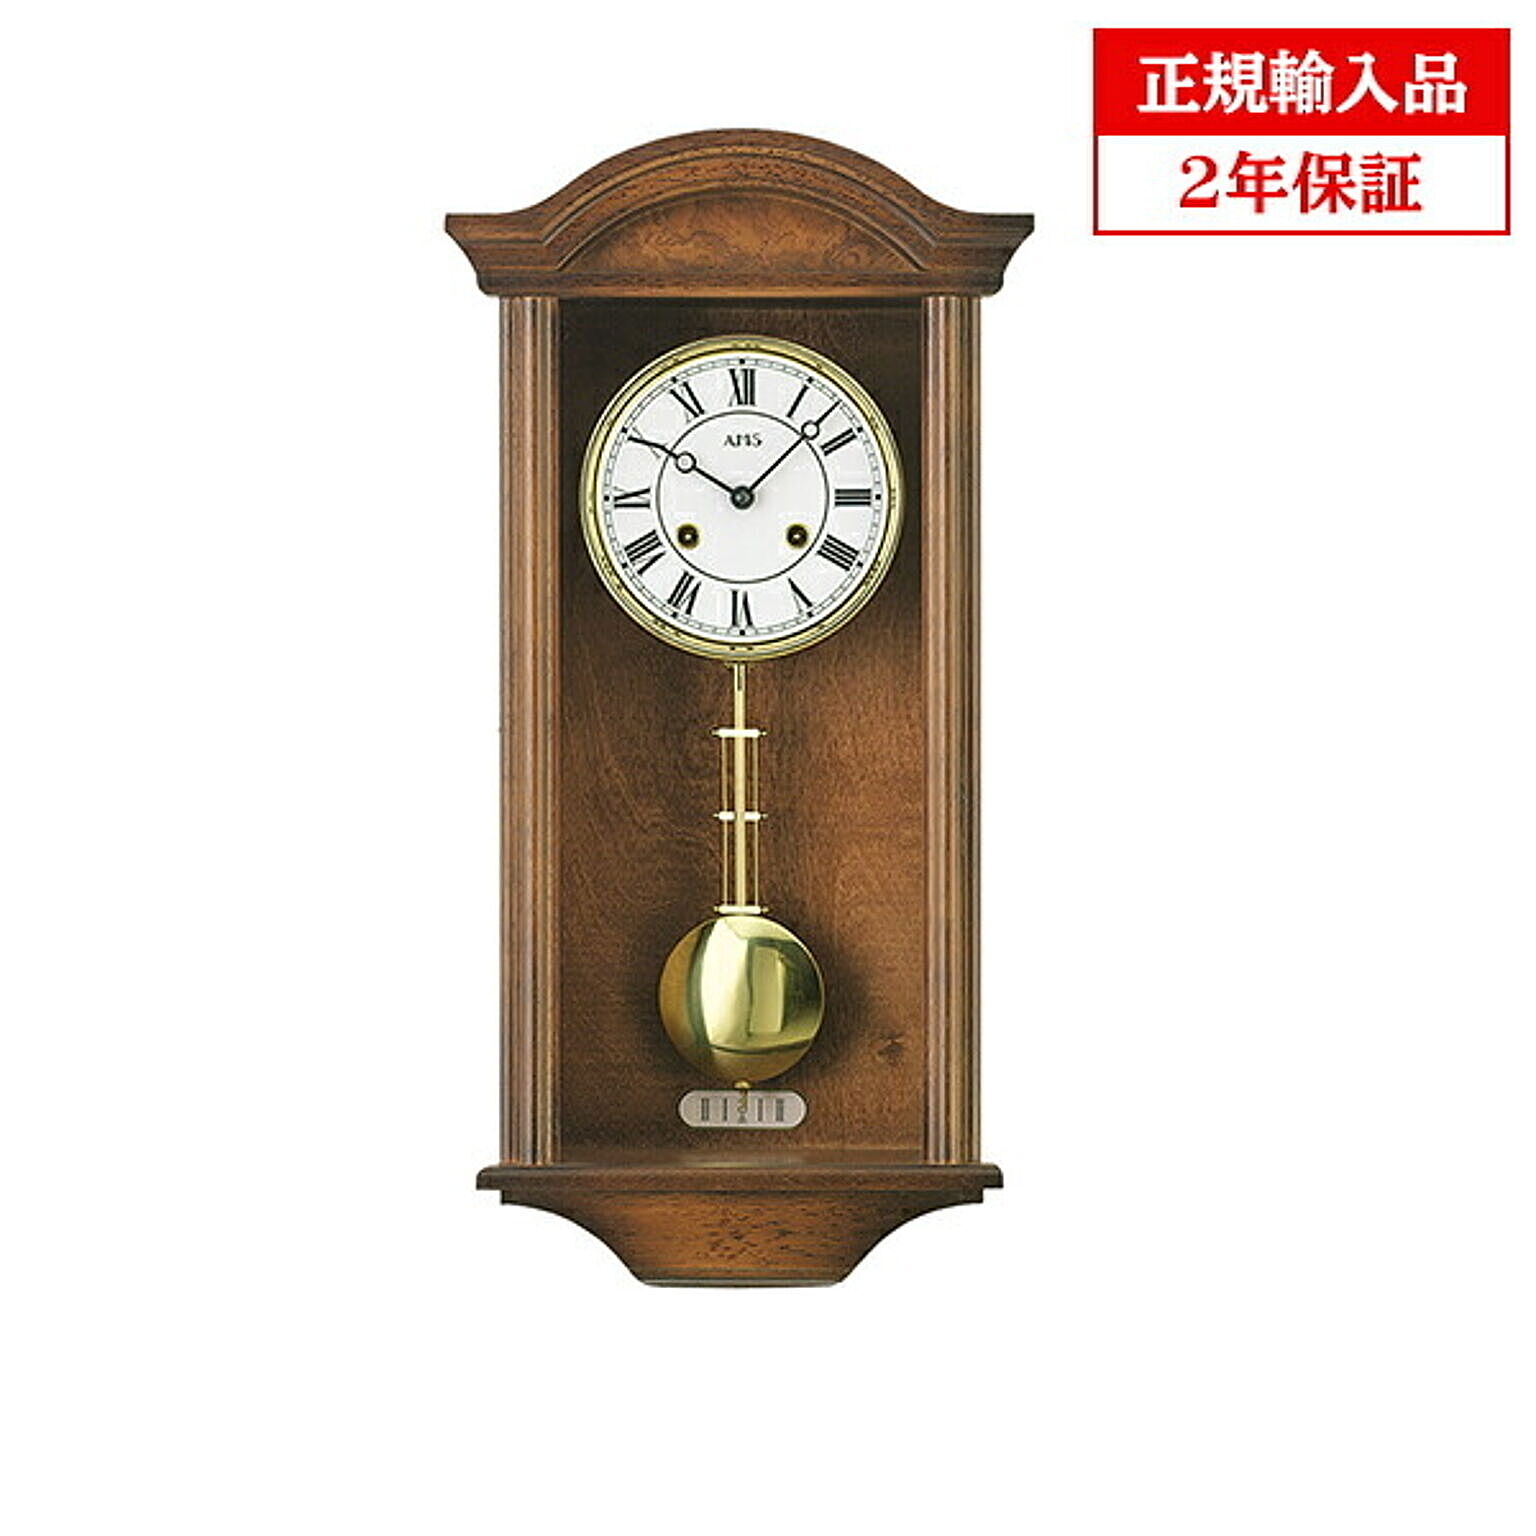 アームス社 AMS 614-1 機械式 掛け時計 (掛時計) ボンボン時計 ドイツ製 【正規輸入品】【メーカー保証2年】